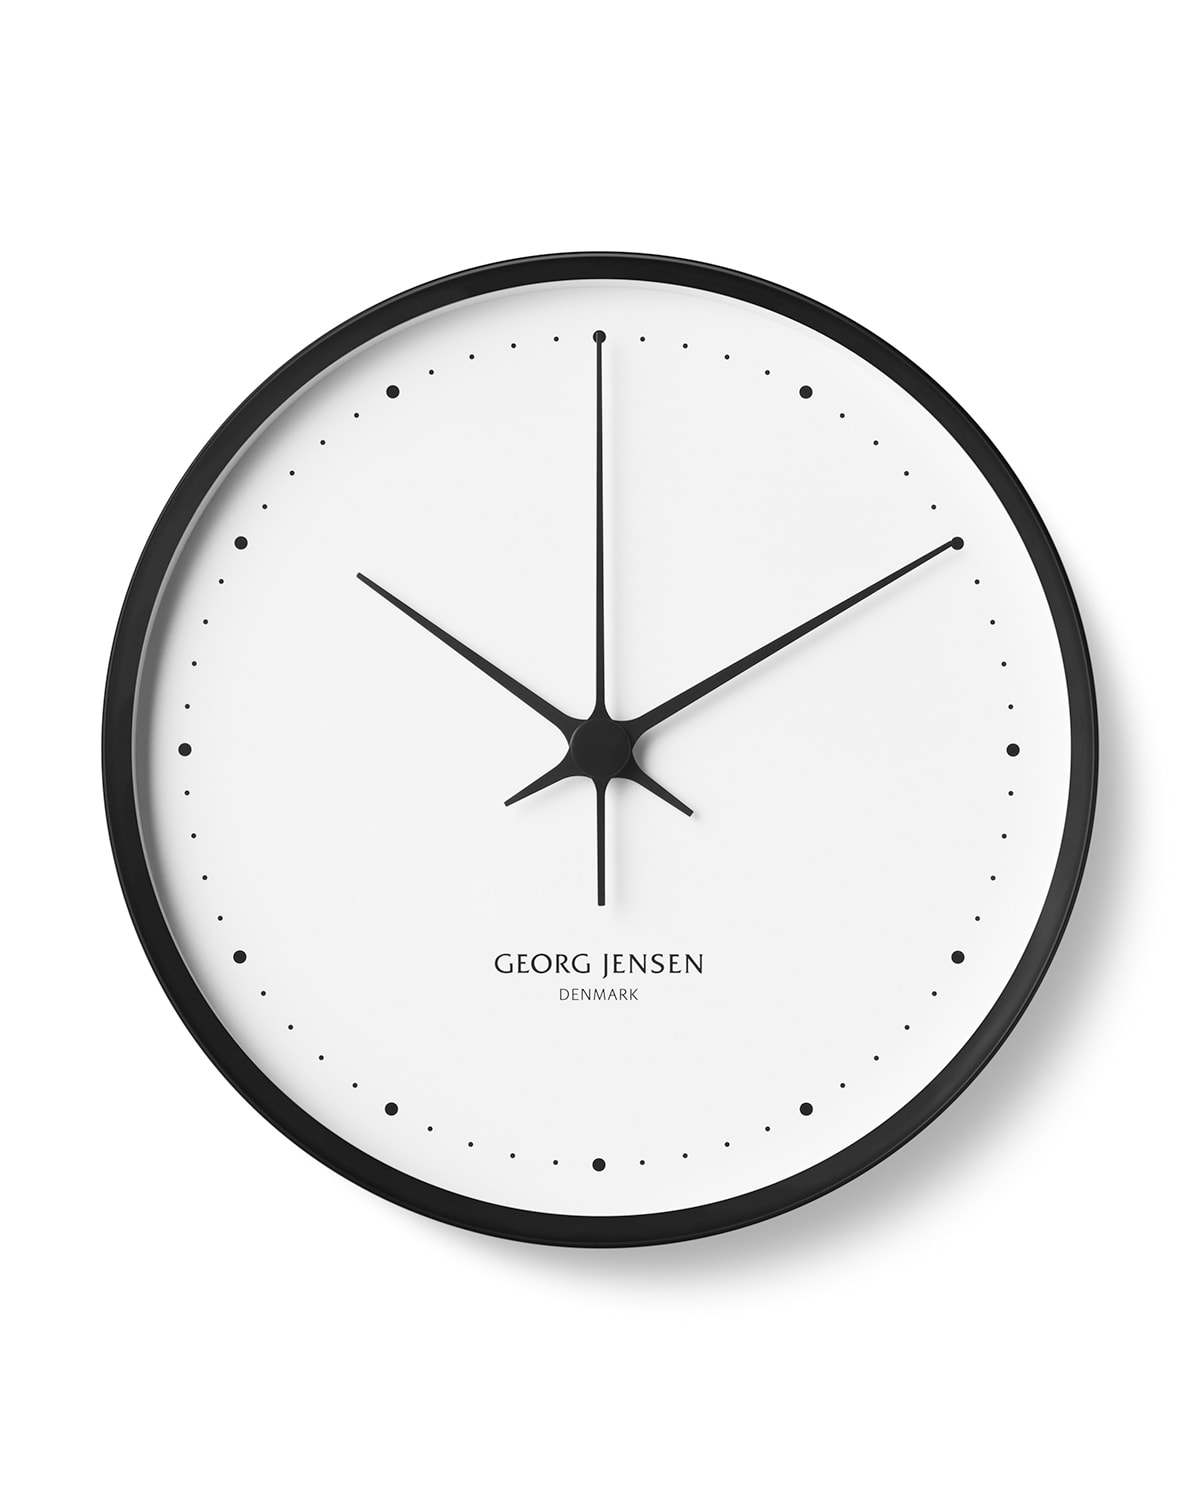 Henning Koppel Clock, 12.8"